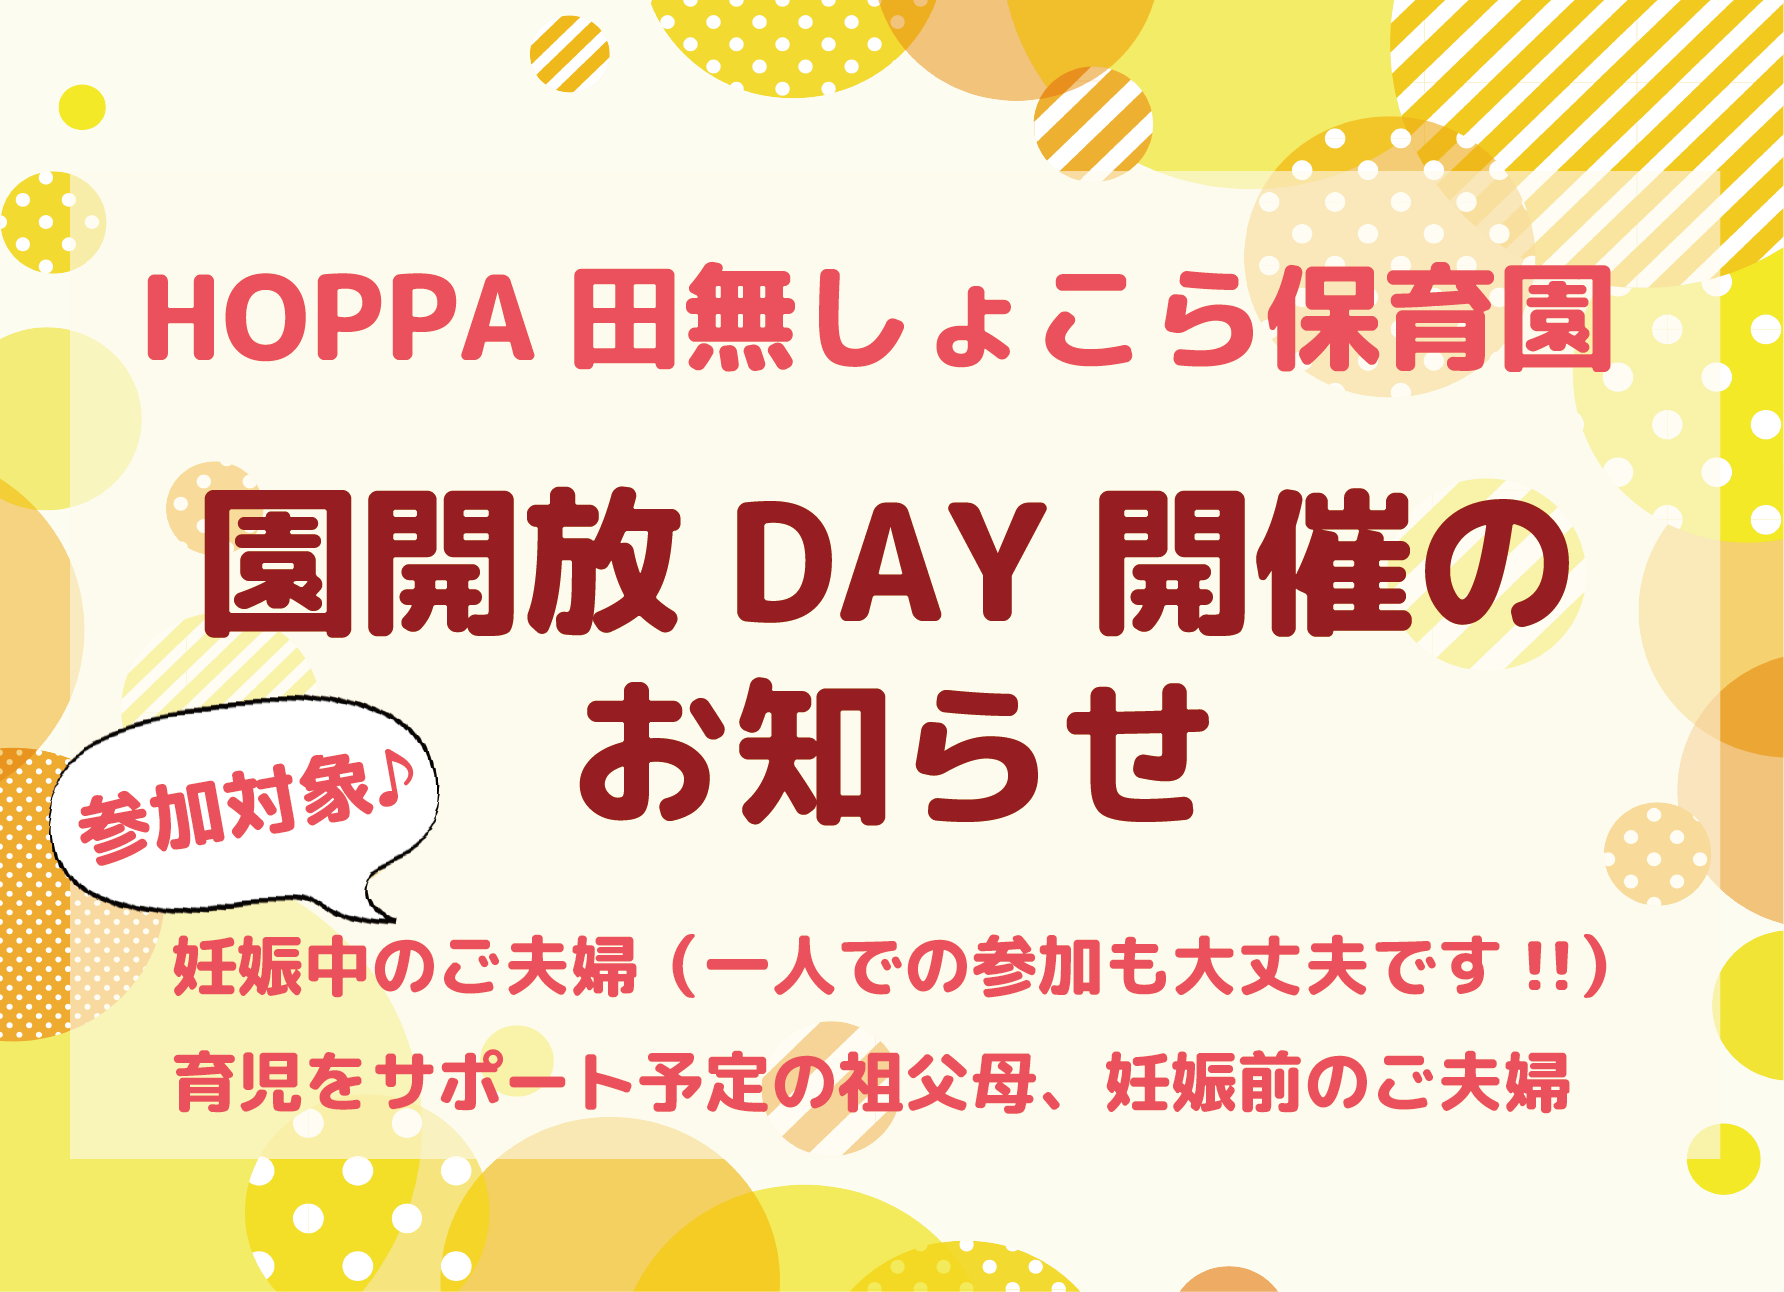 【西東京市】園開放DAY開催のお知らせ【HOPPA田無しょこら保育園】